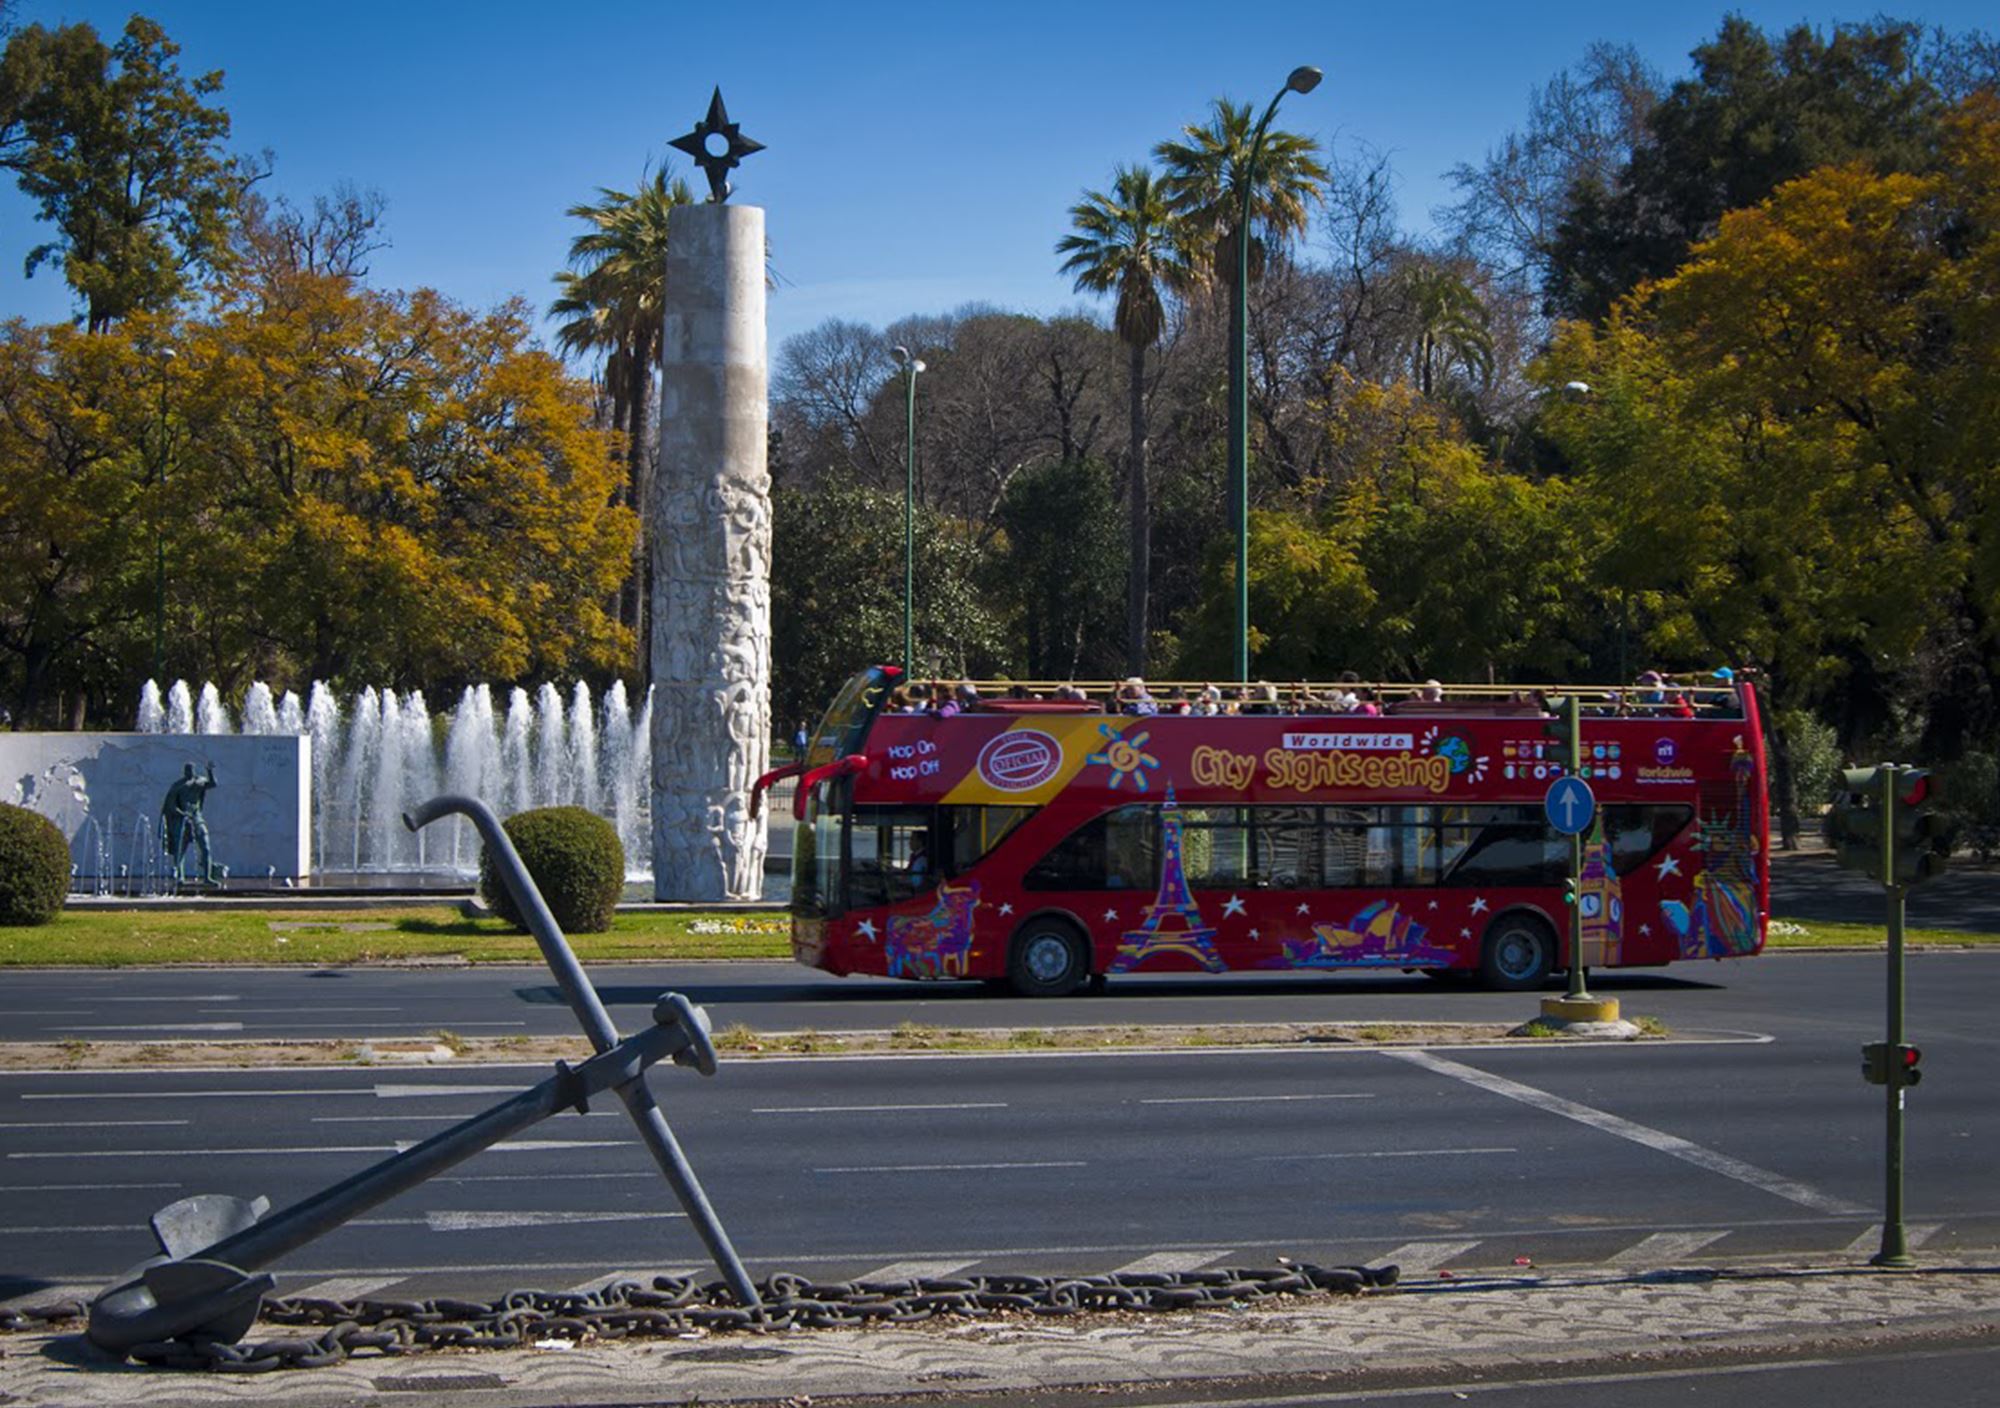 réservations visites guidées Bus Touristique City Sightseeing Séville acheter billets visiter